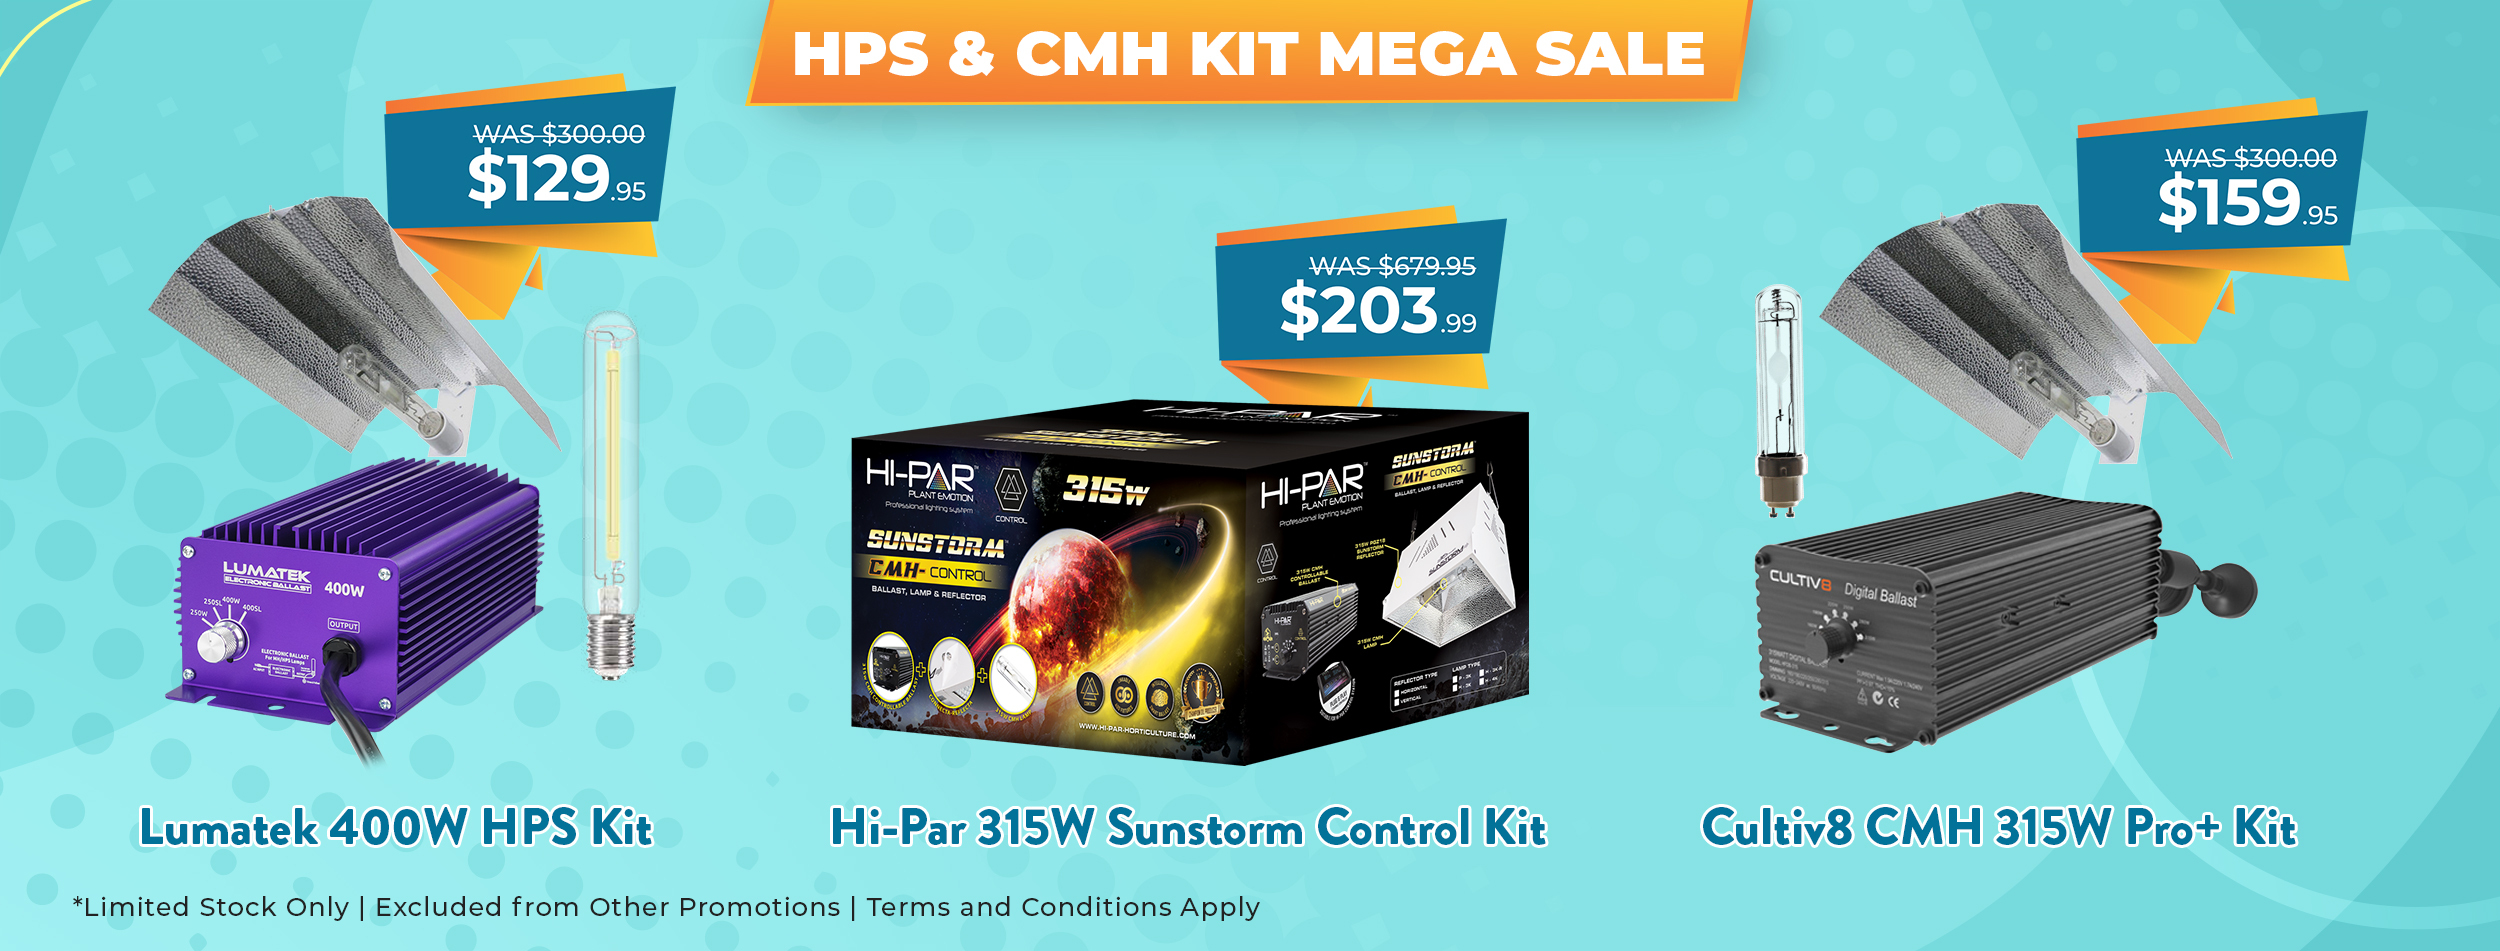 HPS & CMH Kit Mega Sale